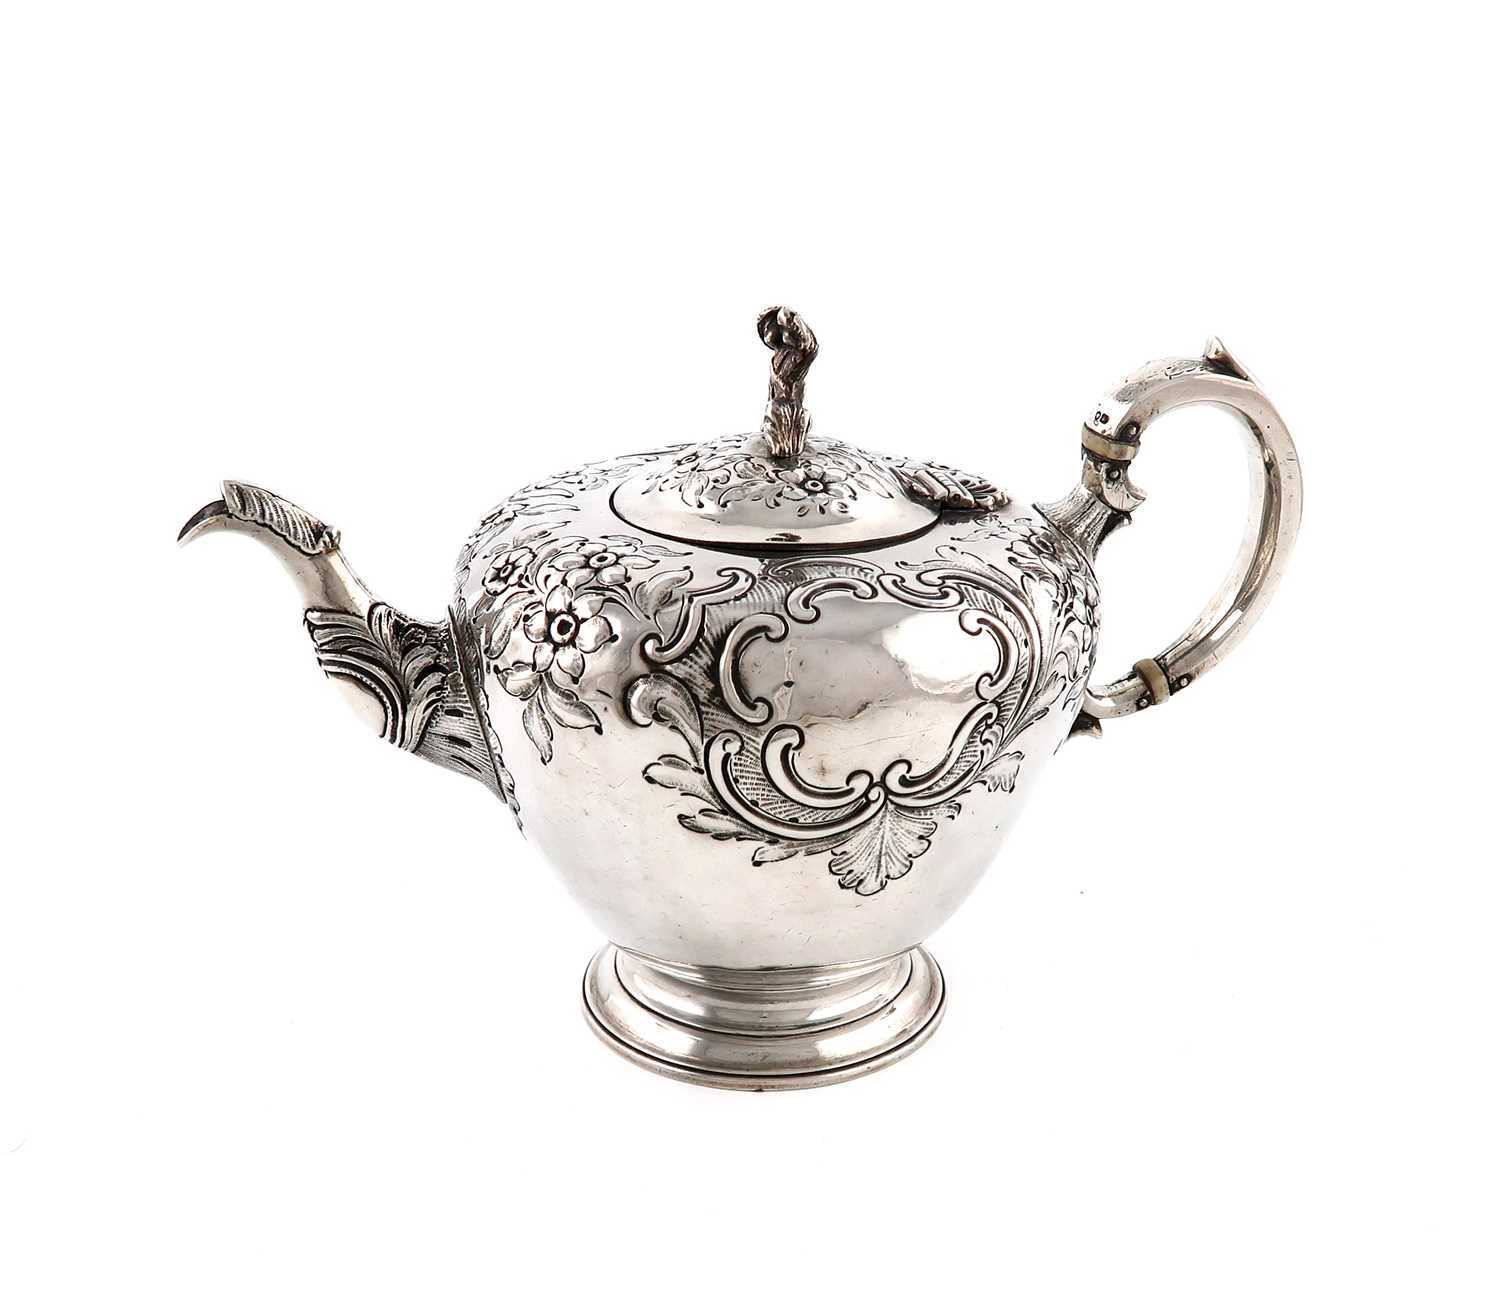 λ λA Victorian silver teapot,by William Moulson, London 1845,circular form, embossed foliate